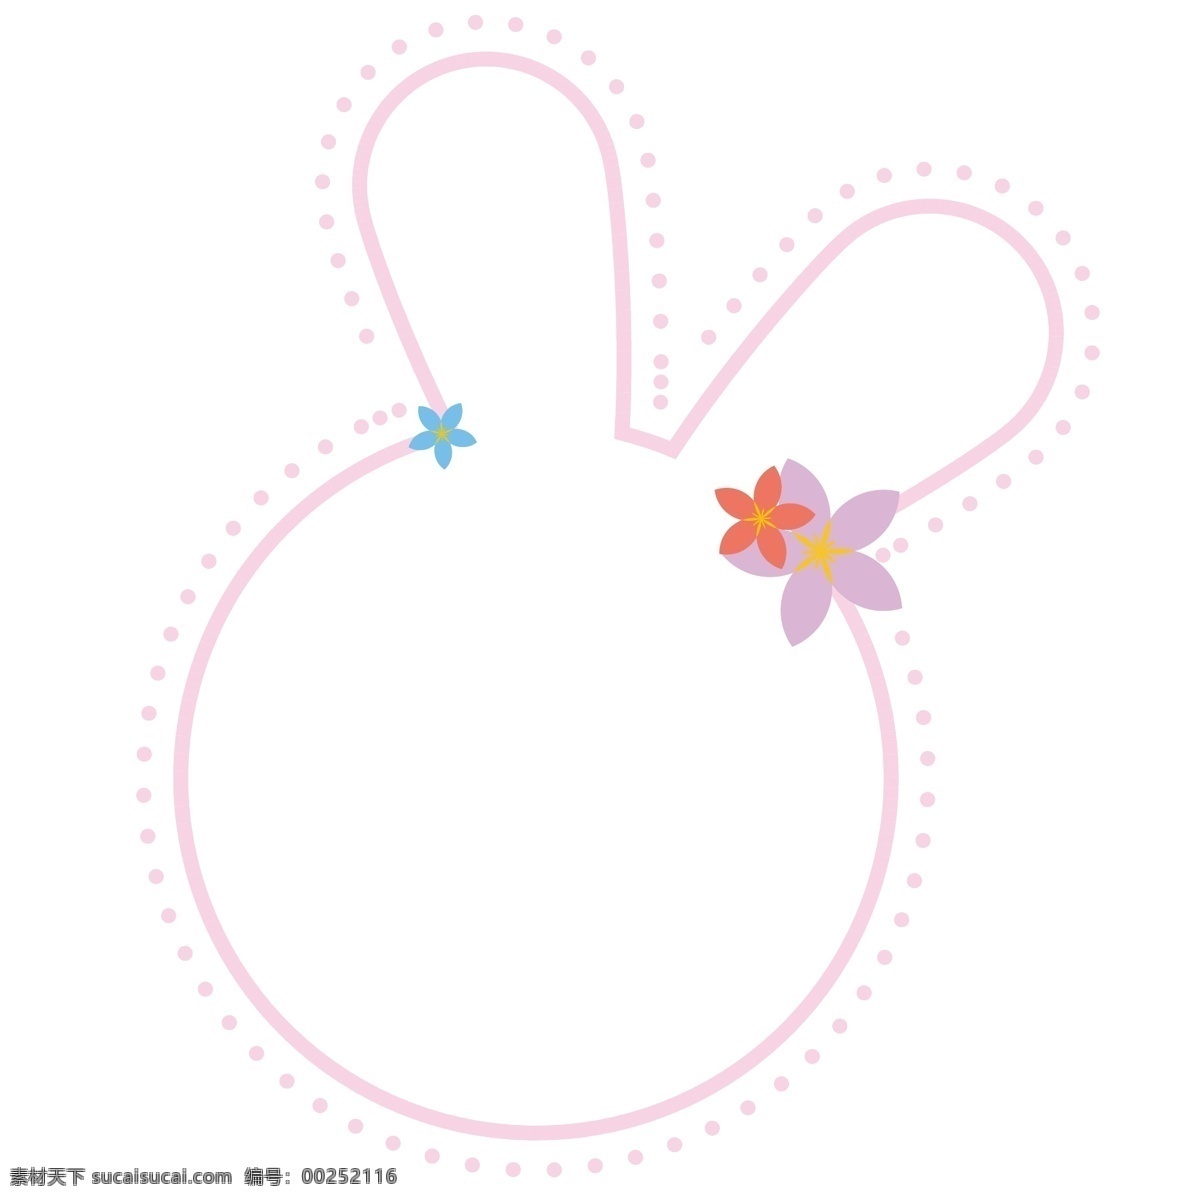 粉色 小 兔 头 可爱 花朵 造型 边框 兔子边框 粉色兔子头 粉色轮廓 彩色五瓣花 彩色花朵 可爱兔子头 可爱兔子 萌萌哒 柔和色彩